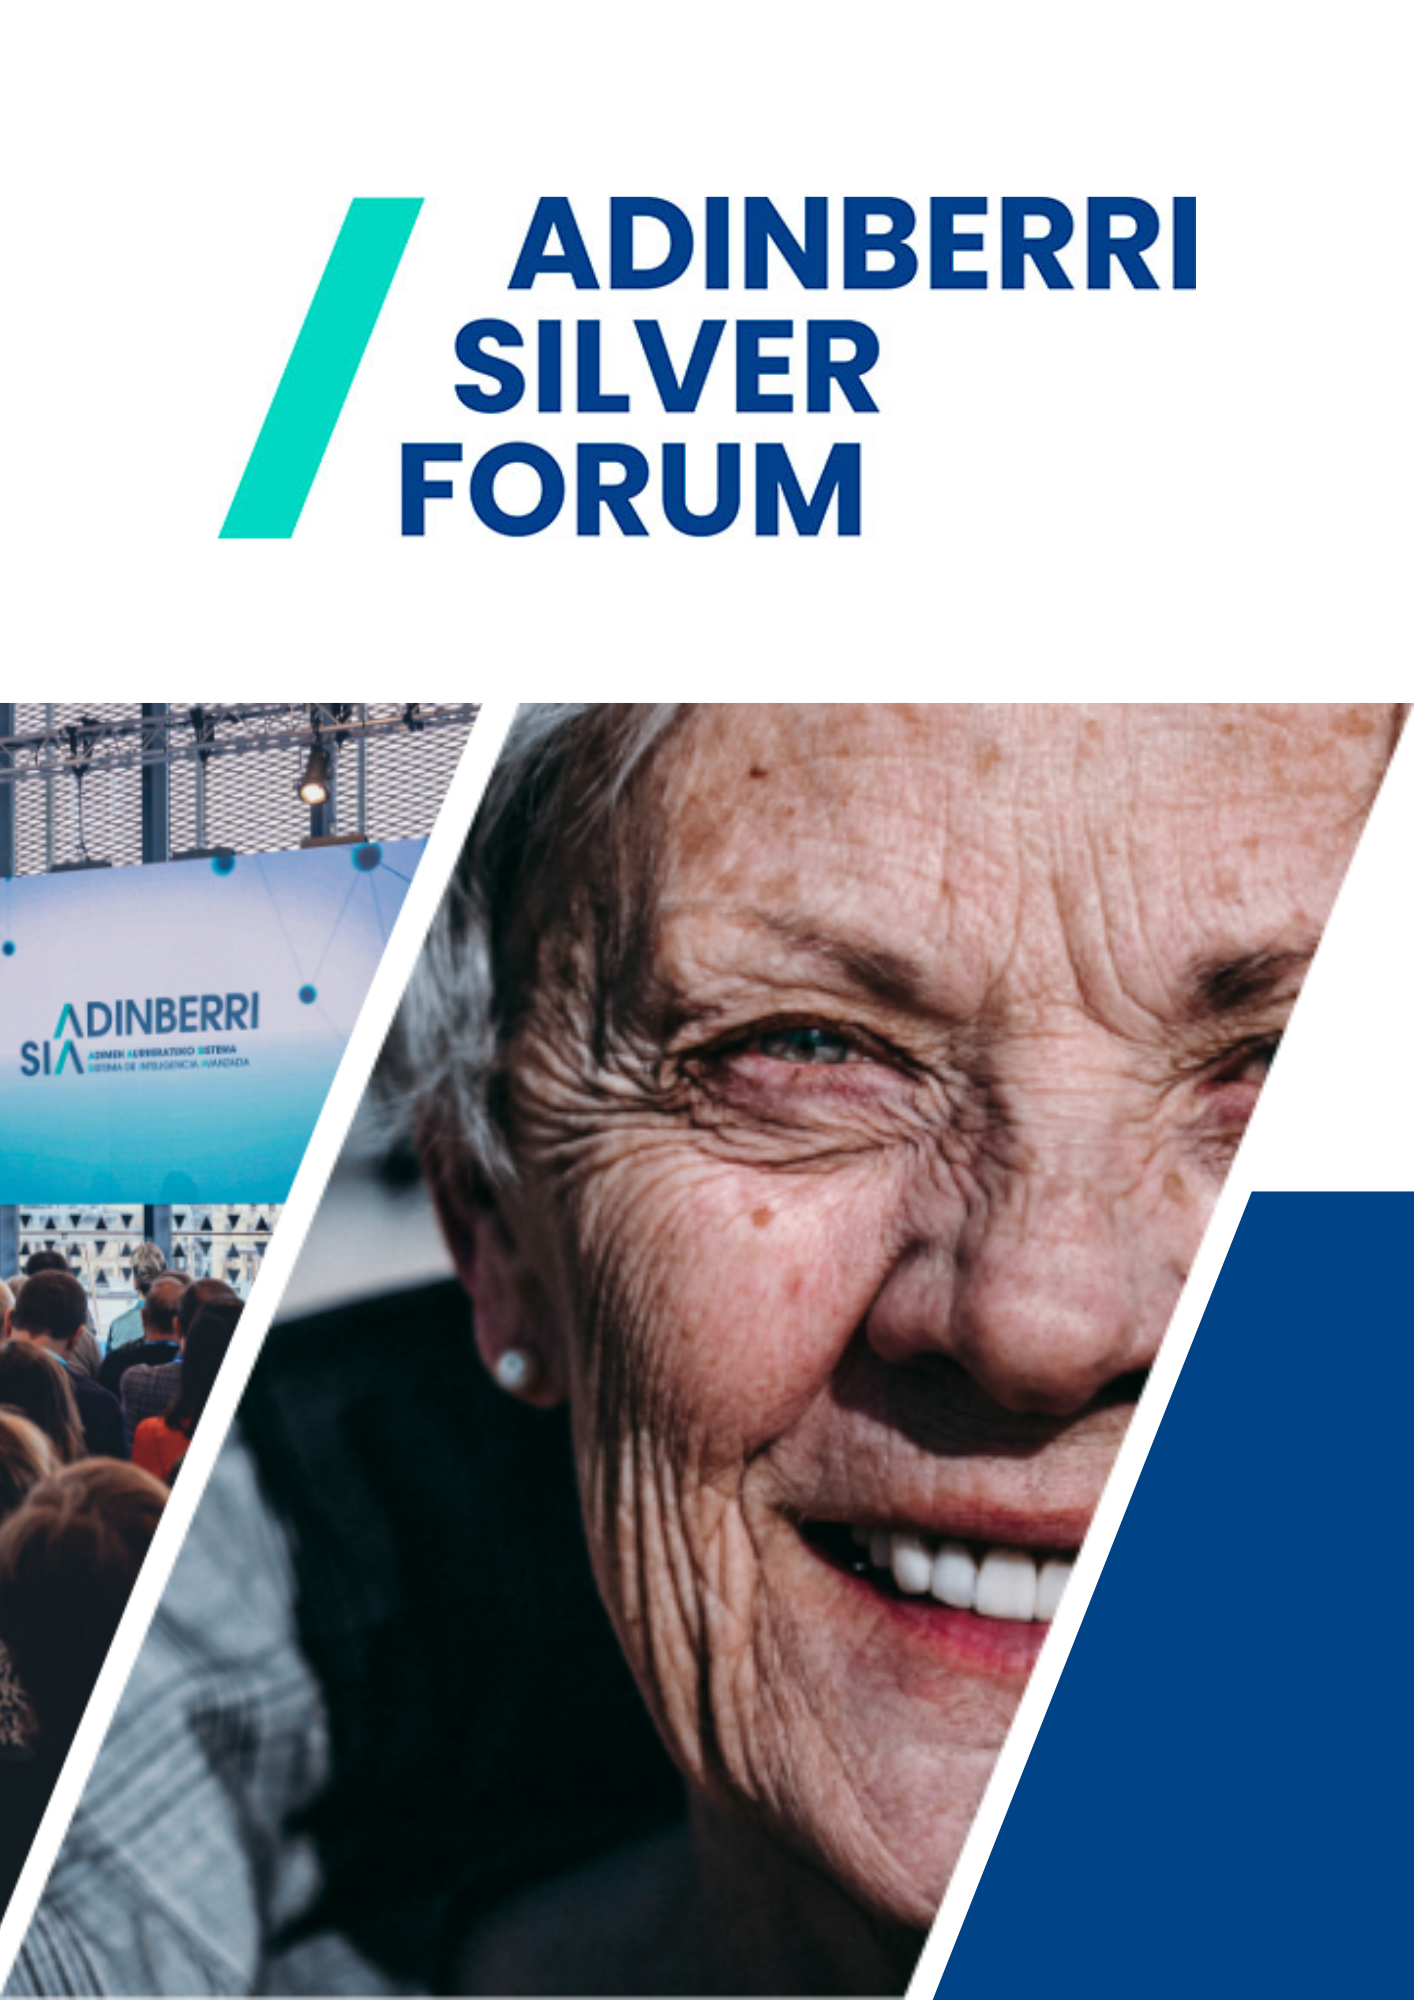 Cartel anunciador Adinberri Silver Forum